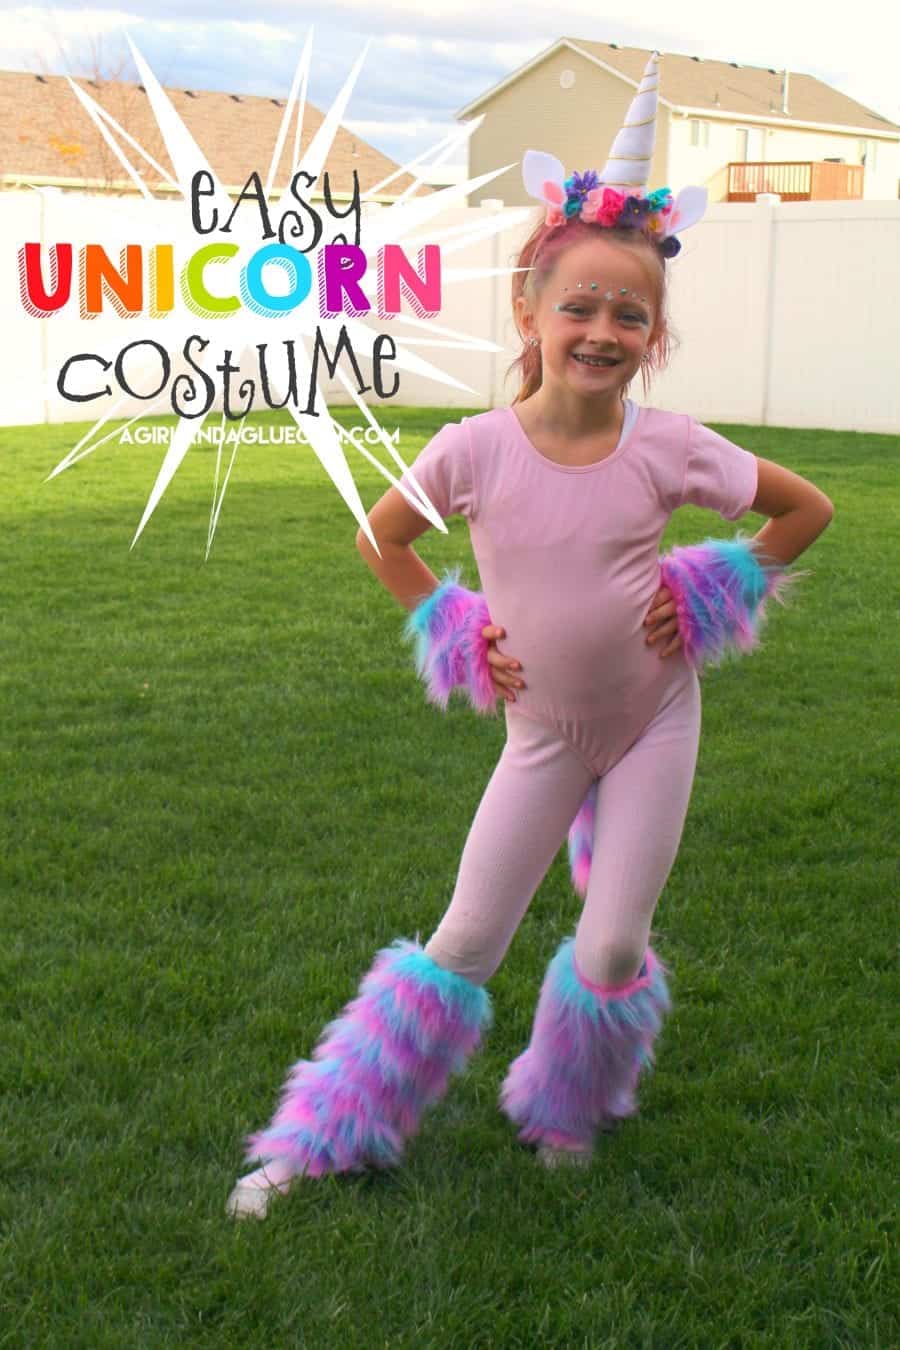 Unicorn costume DIY - A girl and a glue gun